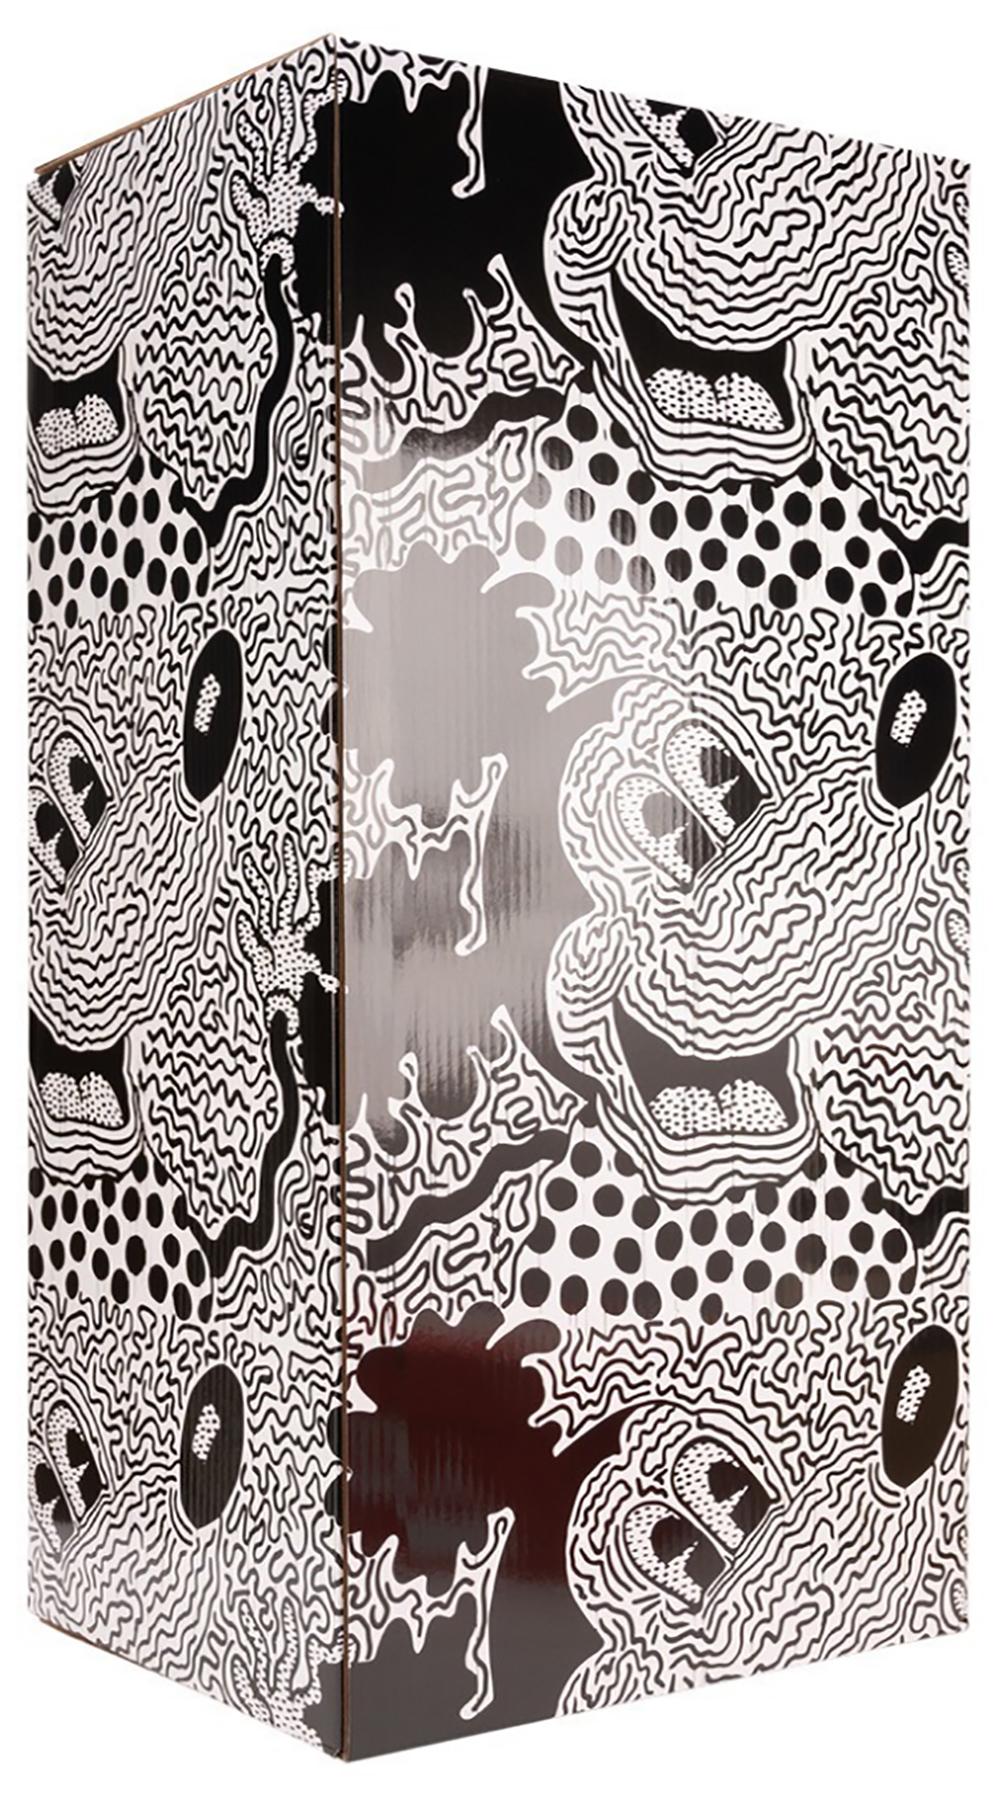 Keith Haring Mickey Mouse Bearbrick: Satz von zwei (400% & 100%):
Ein einzigartiges, zeitloses Sammlerstück, geschützt und lizenziert durch den Nachlass von Keith Haring. Das Sammlerstück mit Partner zeigt Keith Harings Micky-Maus-Kunstwerk aus der